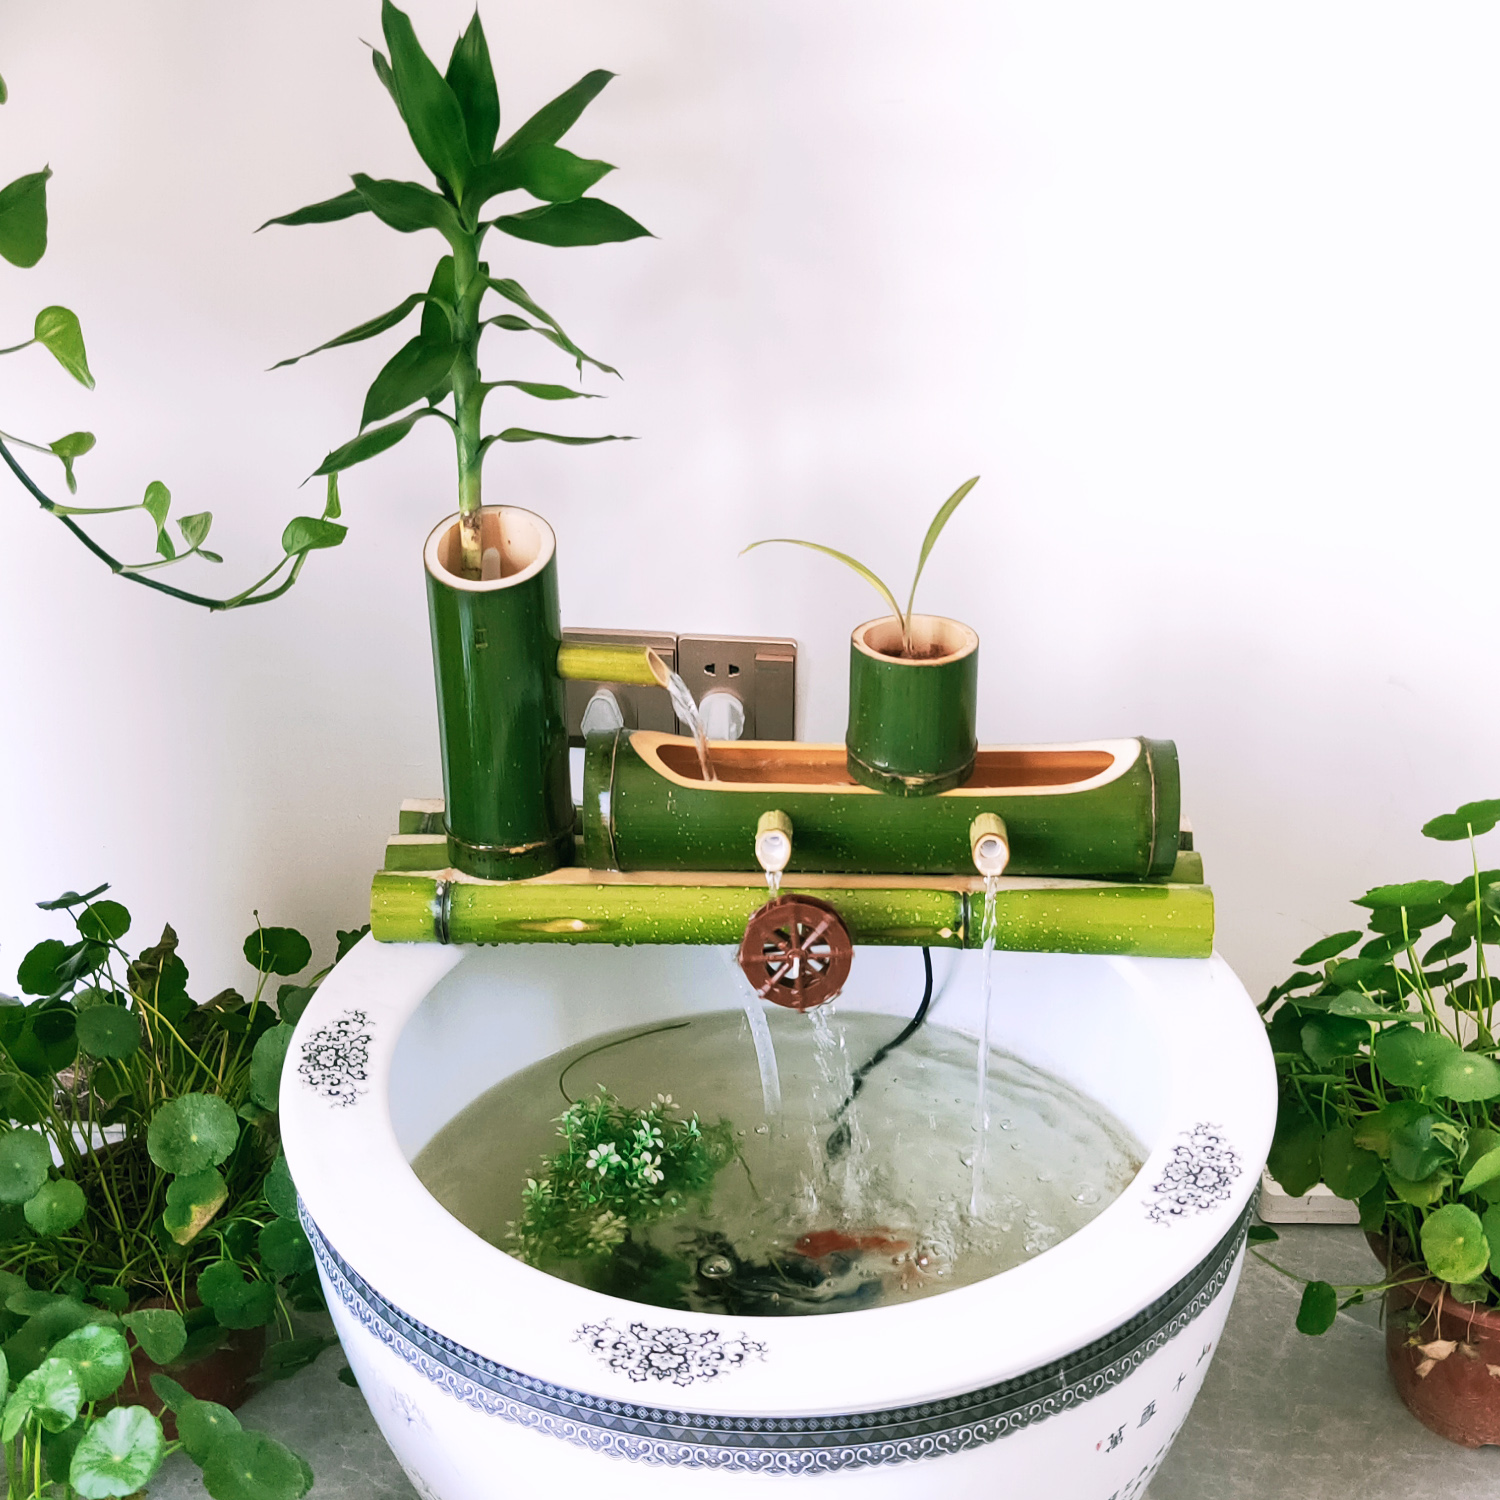 乌龟缸鱼缸生态缸青竹过滤系统美观竹筒绿色摆件水循环自制喷泉